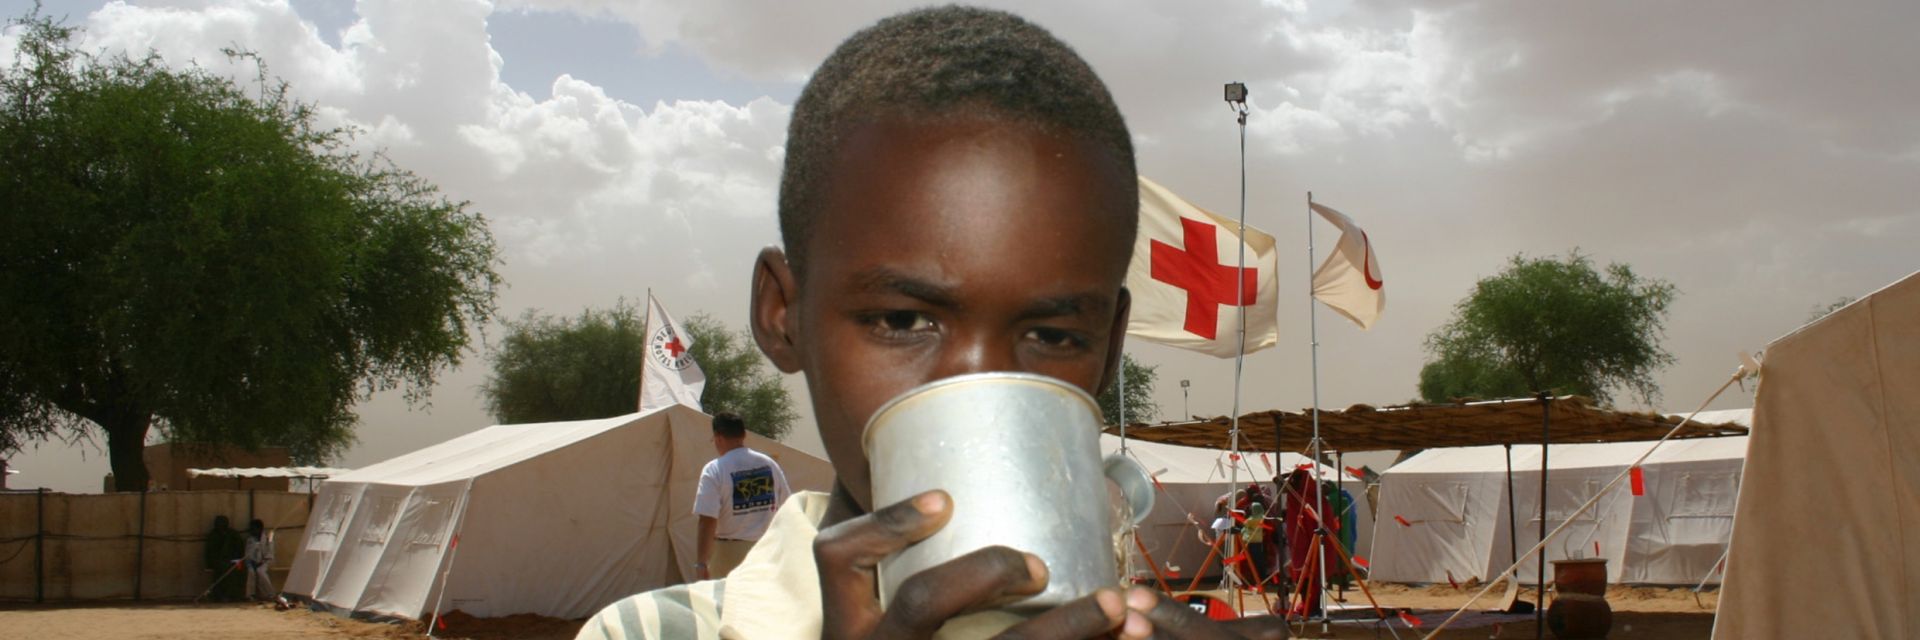 Deutsches Rotes Kreuz DRK, Einsaetze / Hilfseinsaetze, Ausland / Auslandshilfe, Sudan - Darfur, Flüchtlinge, Versorgung, Betreuung, Ernährung, Kind